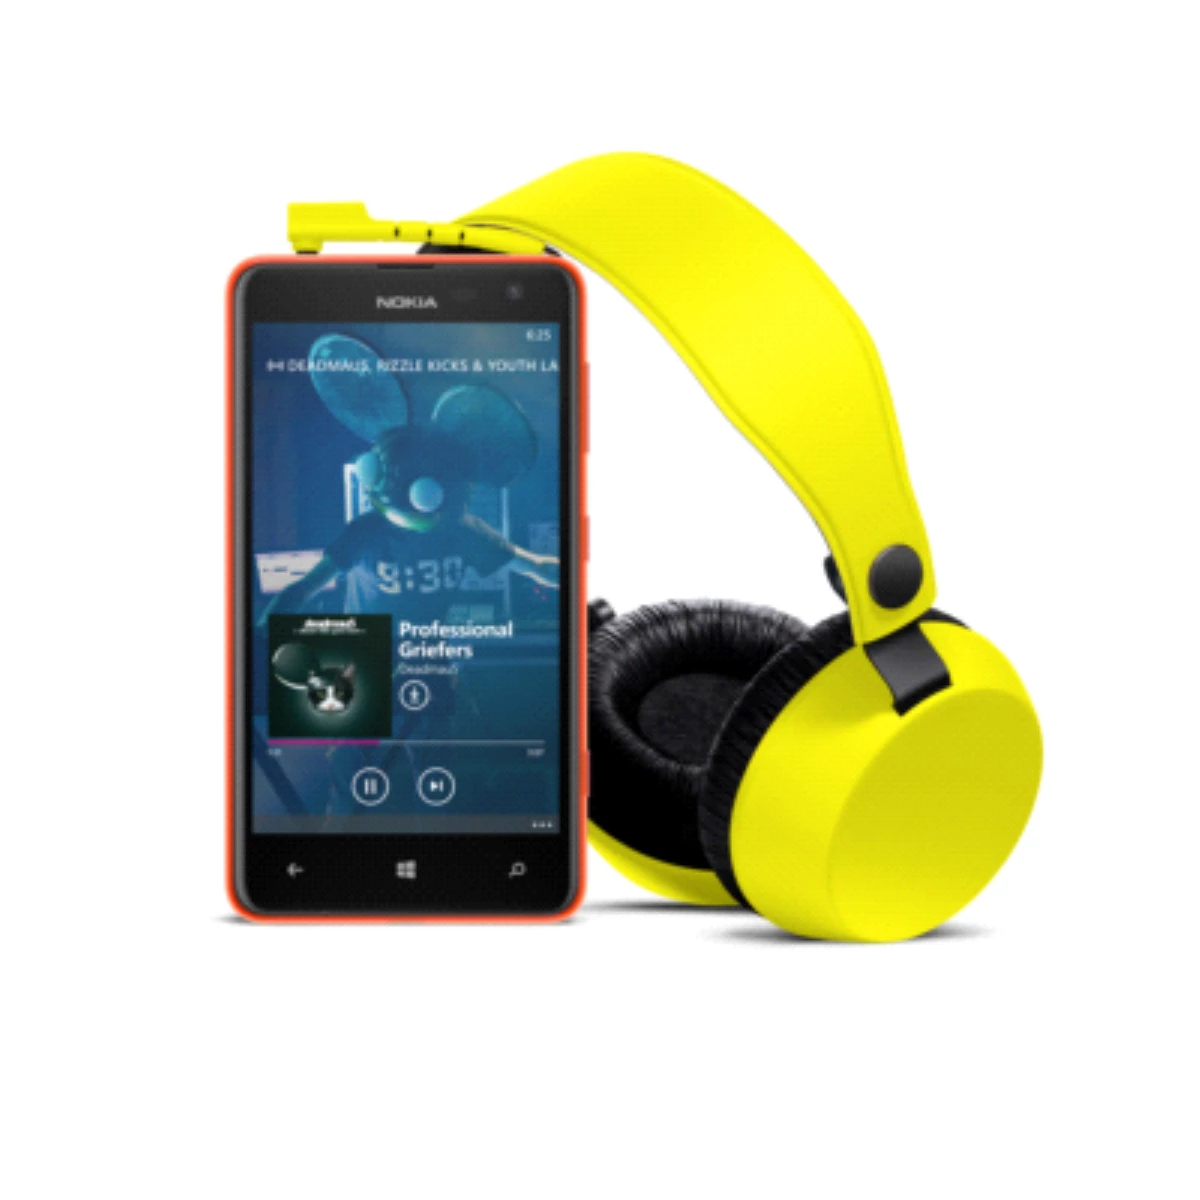 Nokia "Zevkime Göre Çal" Özelliğine Sahip Yeni Nokia Mixradio Uygulamasını Tanıttı